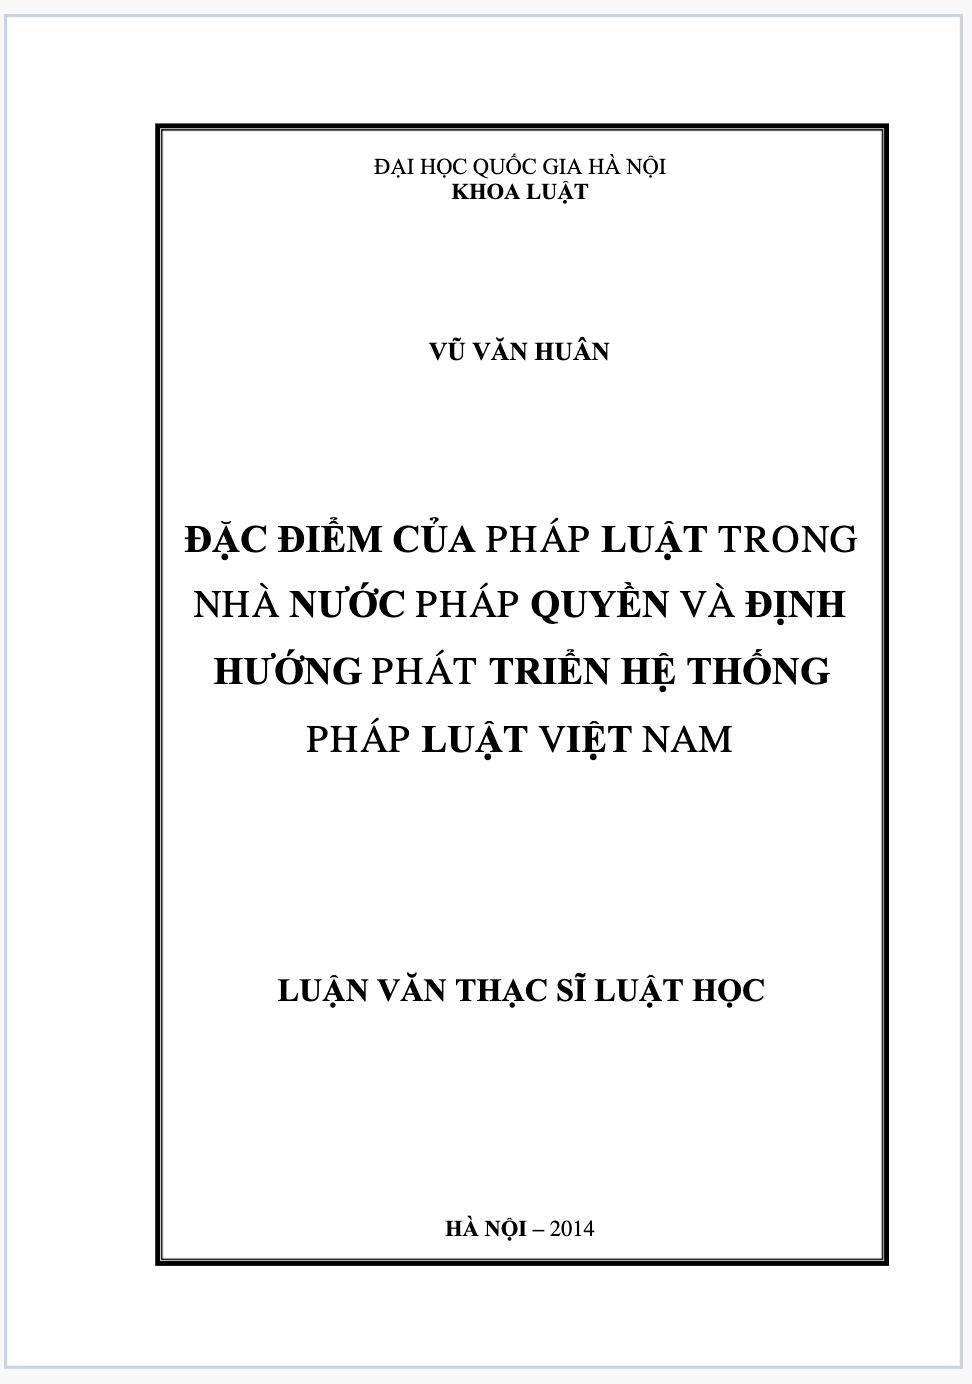 Tóm tắt luận văn thạc sĩ luật học đặc điểm của pháp luật trong nhà nước pháp quyền và định hướng phát triển hệ thống pháp luật Việt Nam 